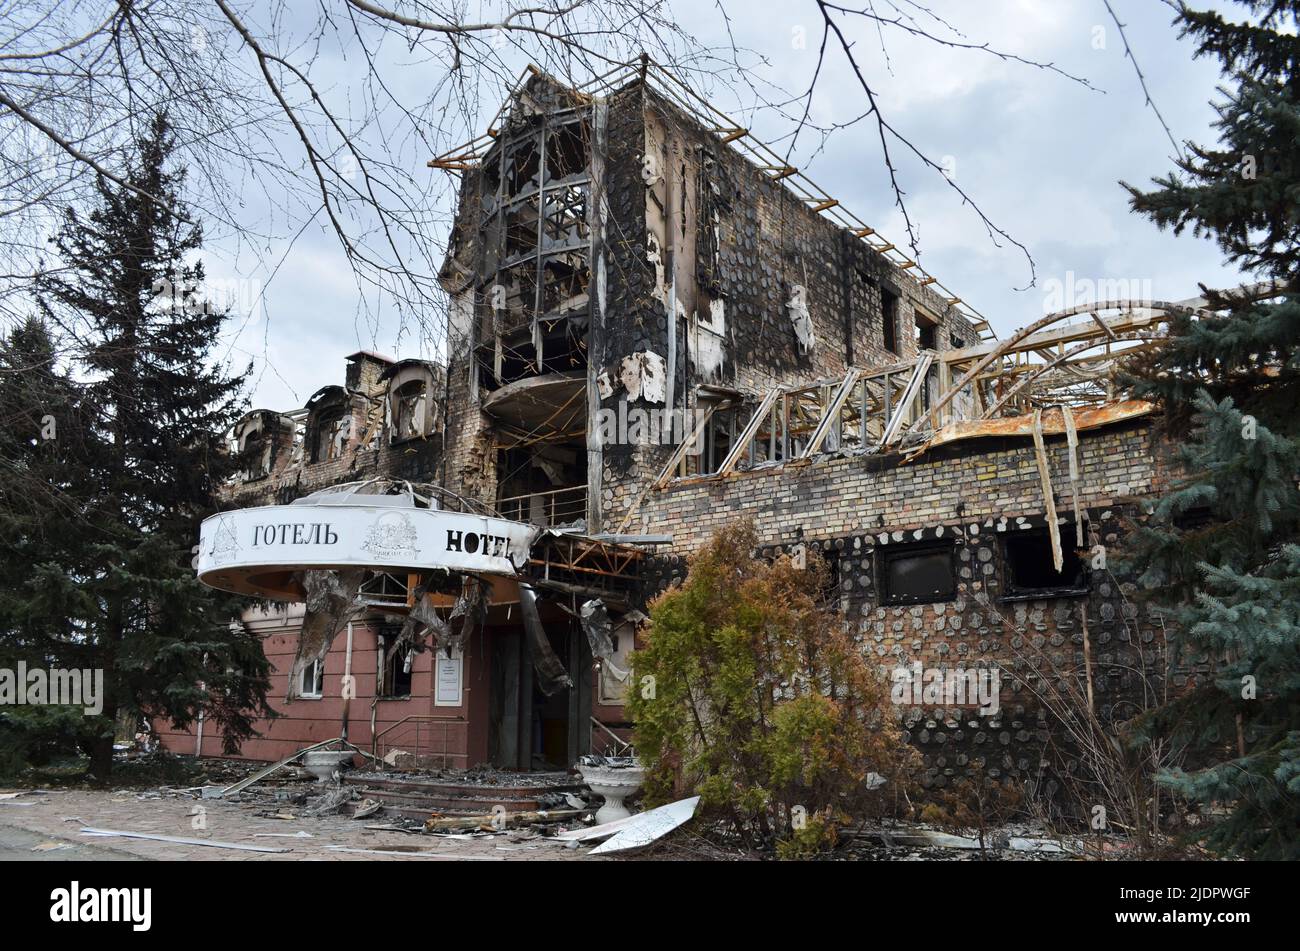 Mriya, Kyiv region, Ukraine - Apr 11, 2022: Destroyed Babushkin Sad hotel near Zhytomyr highway Kiev region during the Russian invasion of Ukraine. Stock Photo